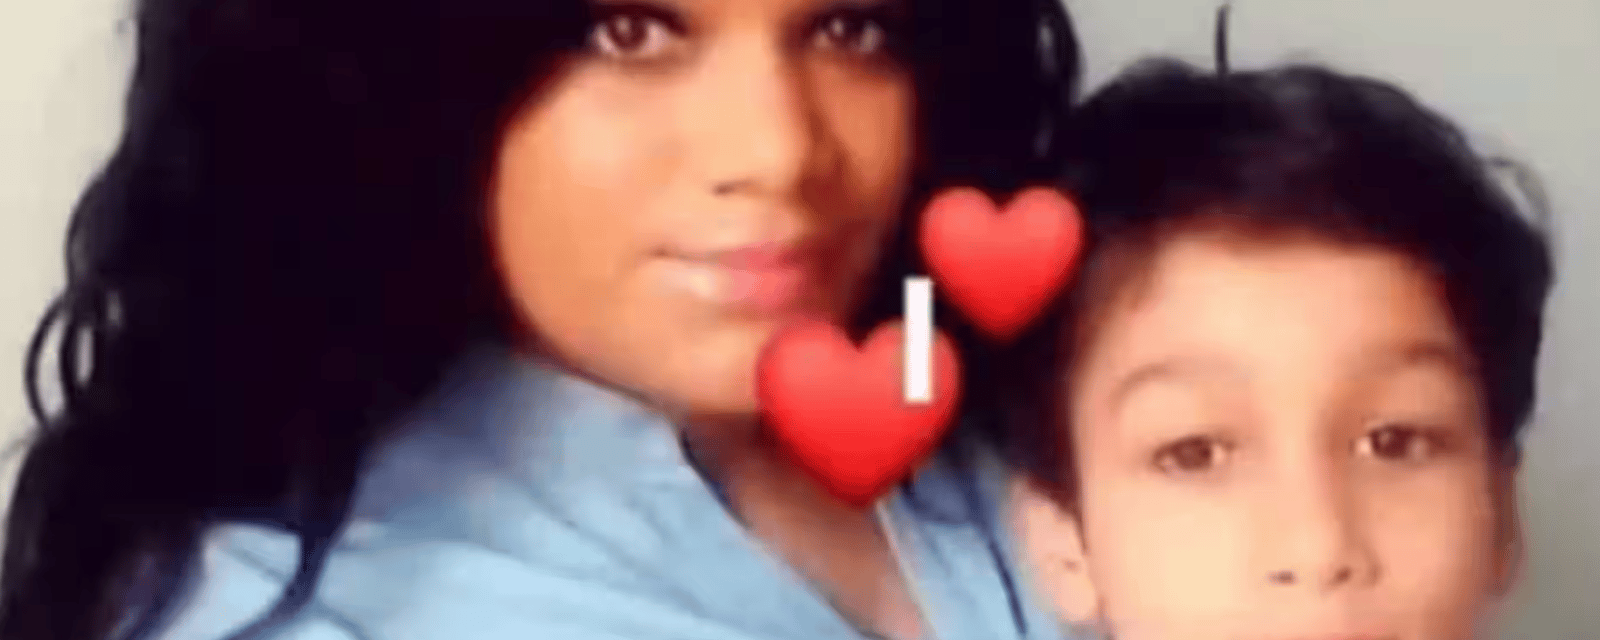 Une mère s'enlève la vie après avoir tué son fils autiste.